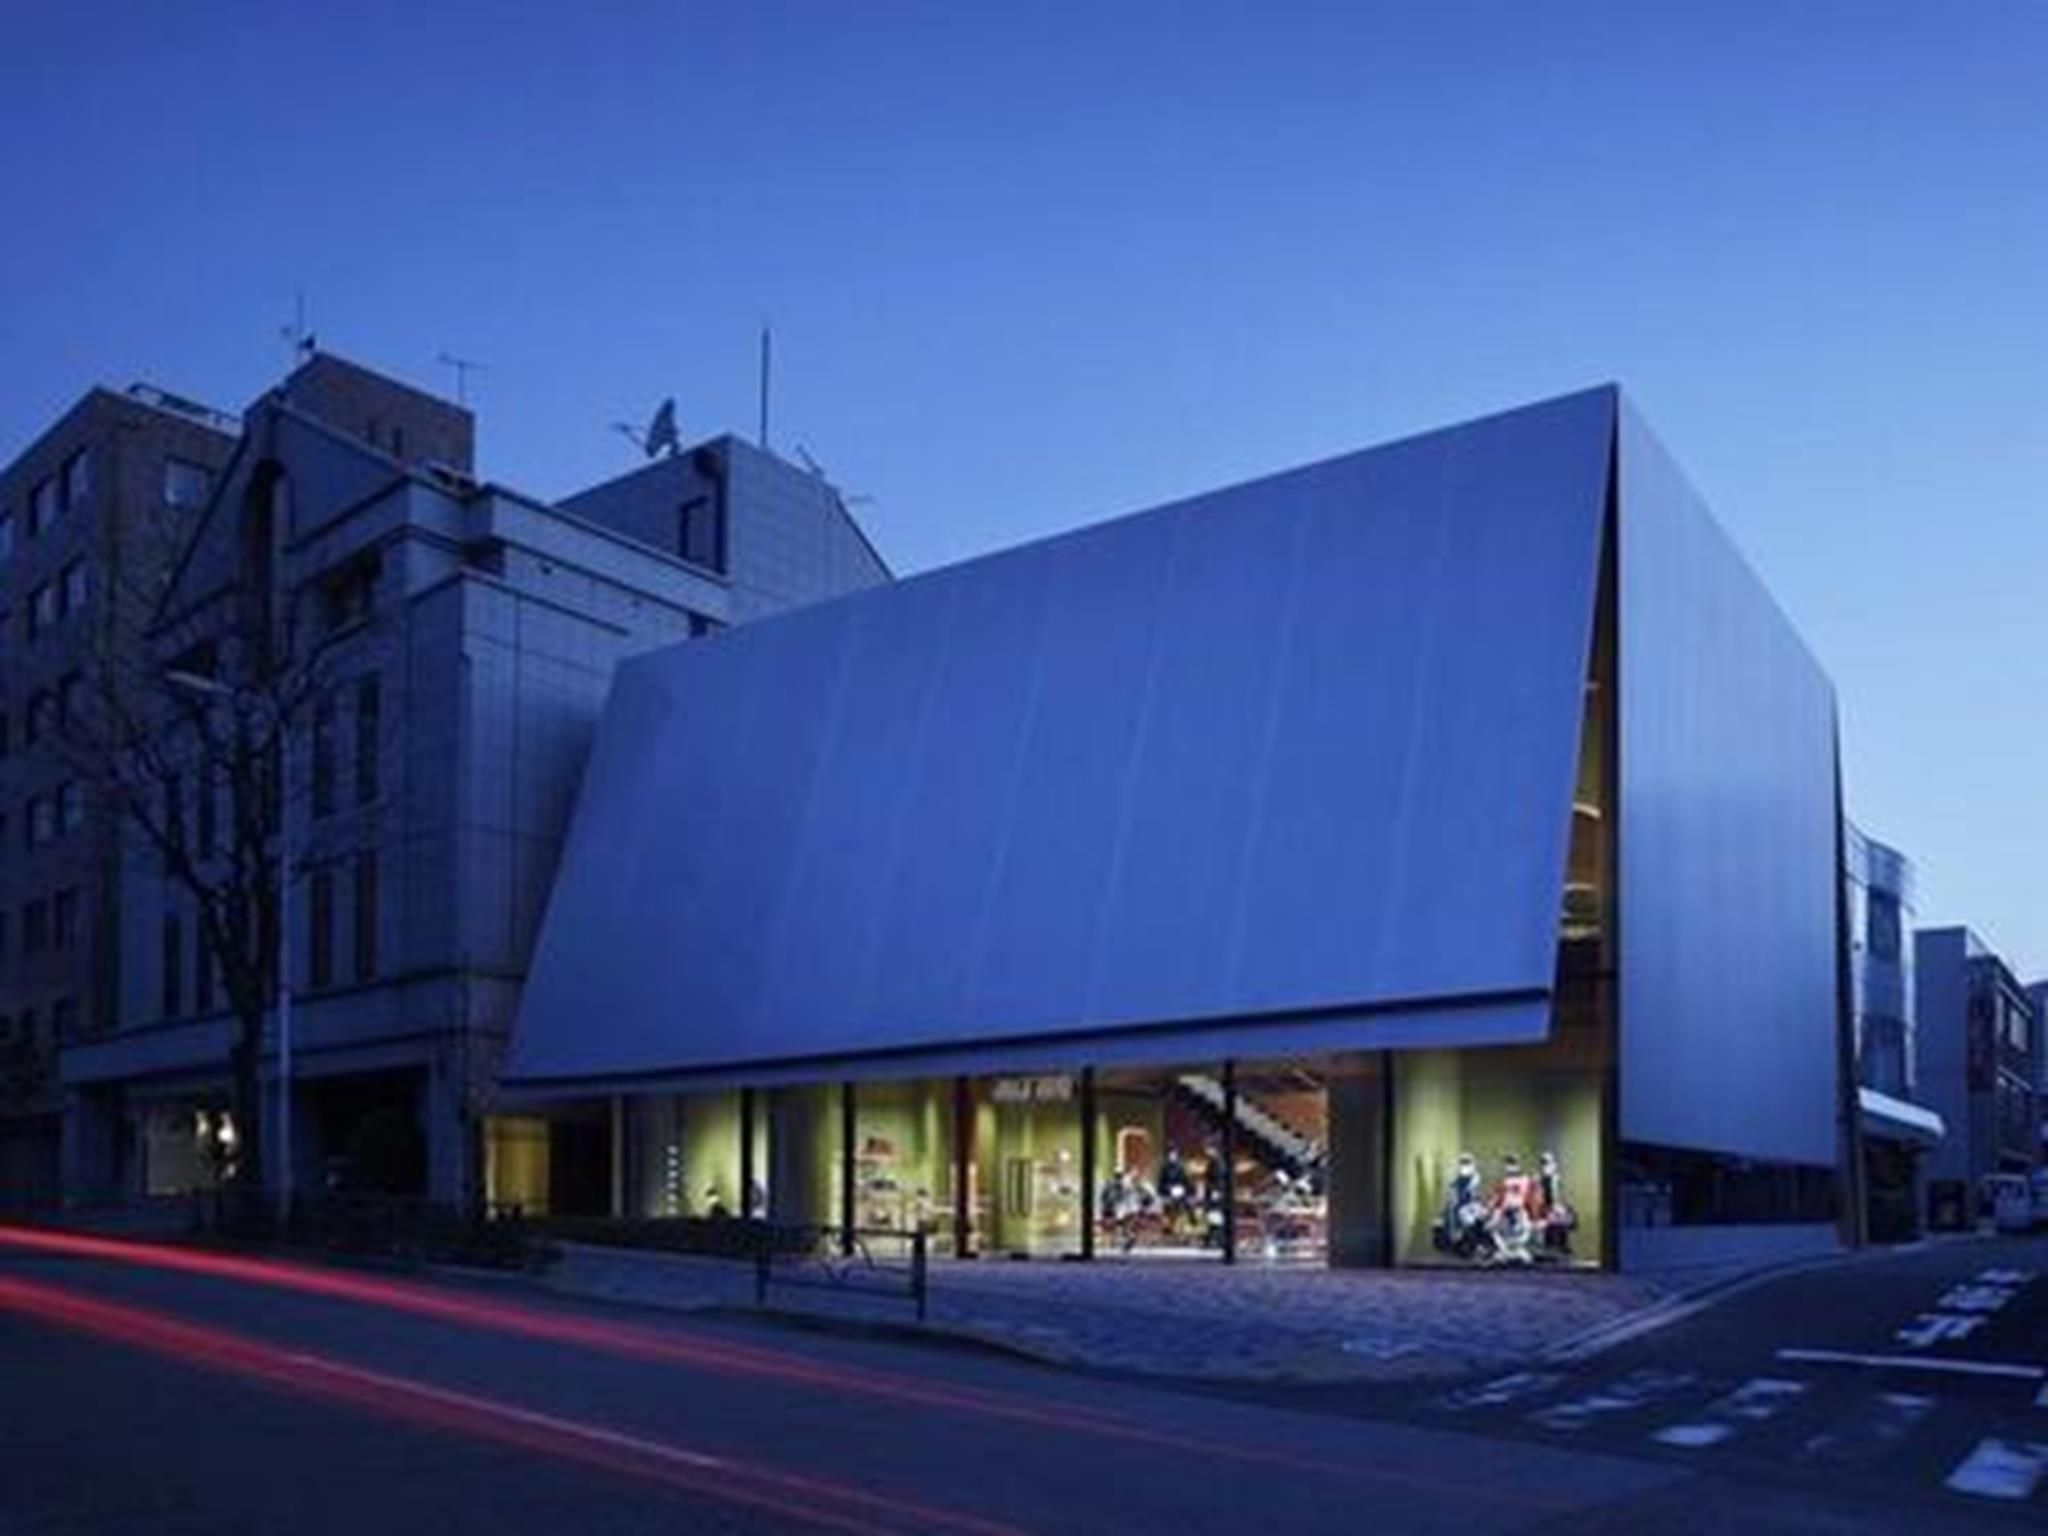 Là một trong những công trình của năm 2016, cửa hàng Miu Miu Aoyama ở Tokyo, Nhật Bản có thiết kế đơn giản nhưng ấn tượng. Cửa hàng trông giống một chiếc hộp xinh xắn với mặt tiền bằng cấu trúc thép nổi bật giữa các tòa nhà bằng kính xung quanh.